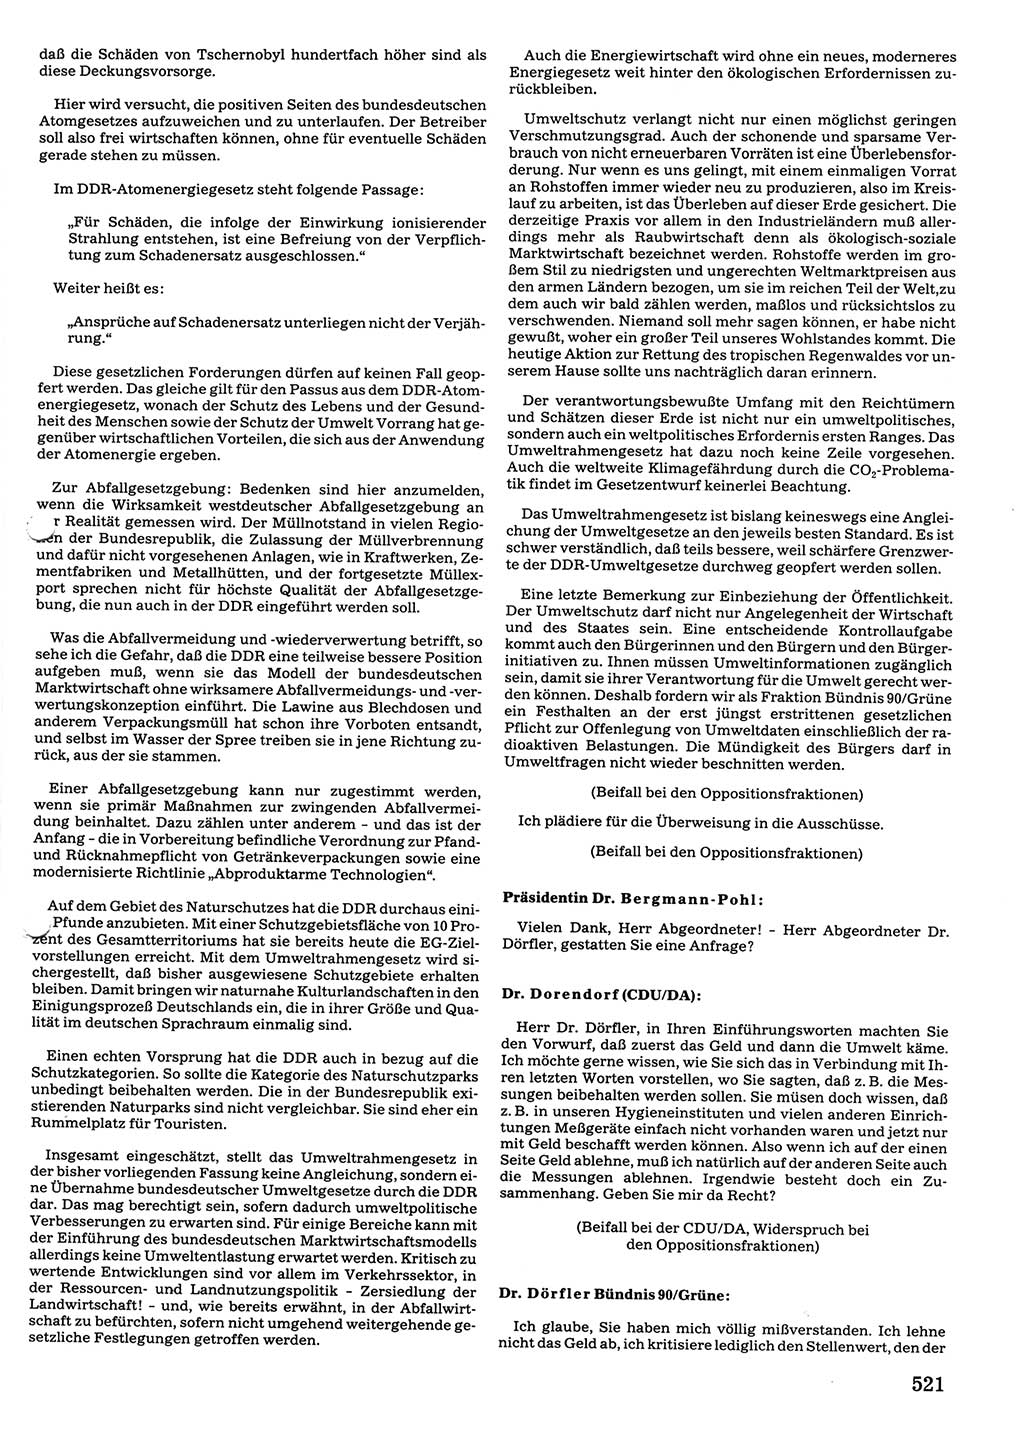 Tagungen der Volkskammer (VK) der Deutschen Demokratischen Republik (DDR), 10. Wahlperiode 1990, Seite 521 (VK. DDR 10. WP. 1990, Prot. Tg. 1-38, 5.4.-2.10.1990, S. 521)